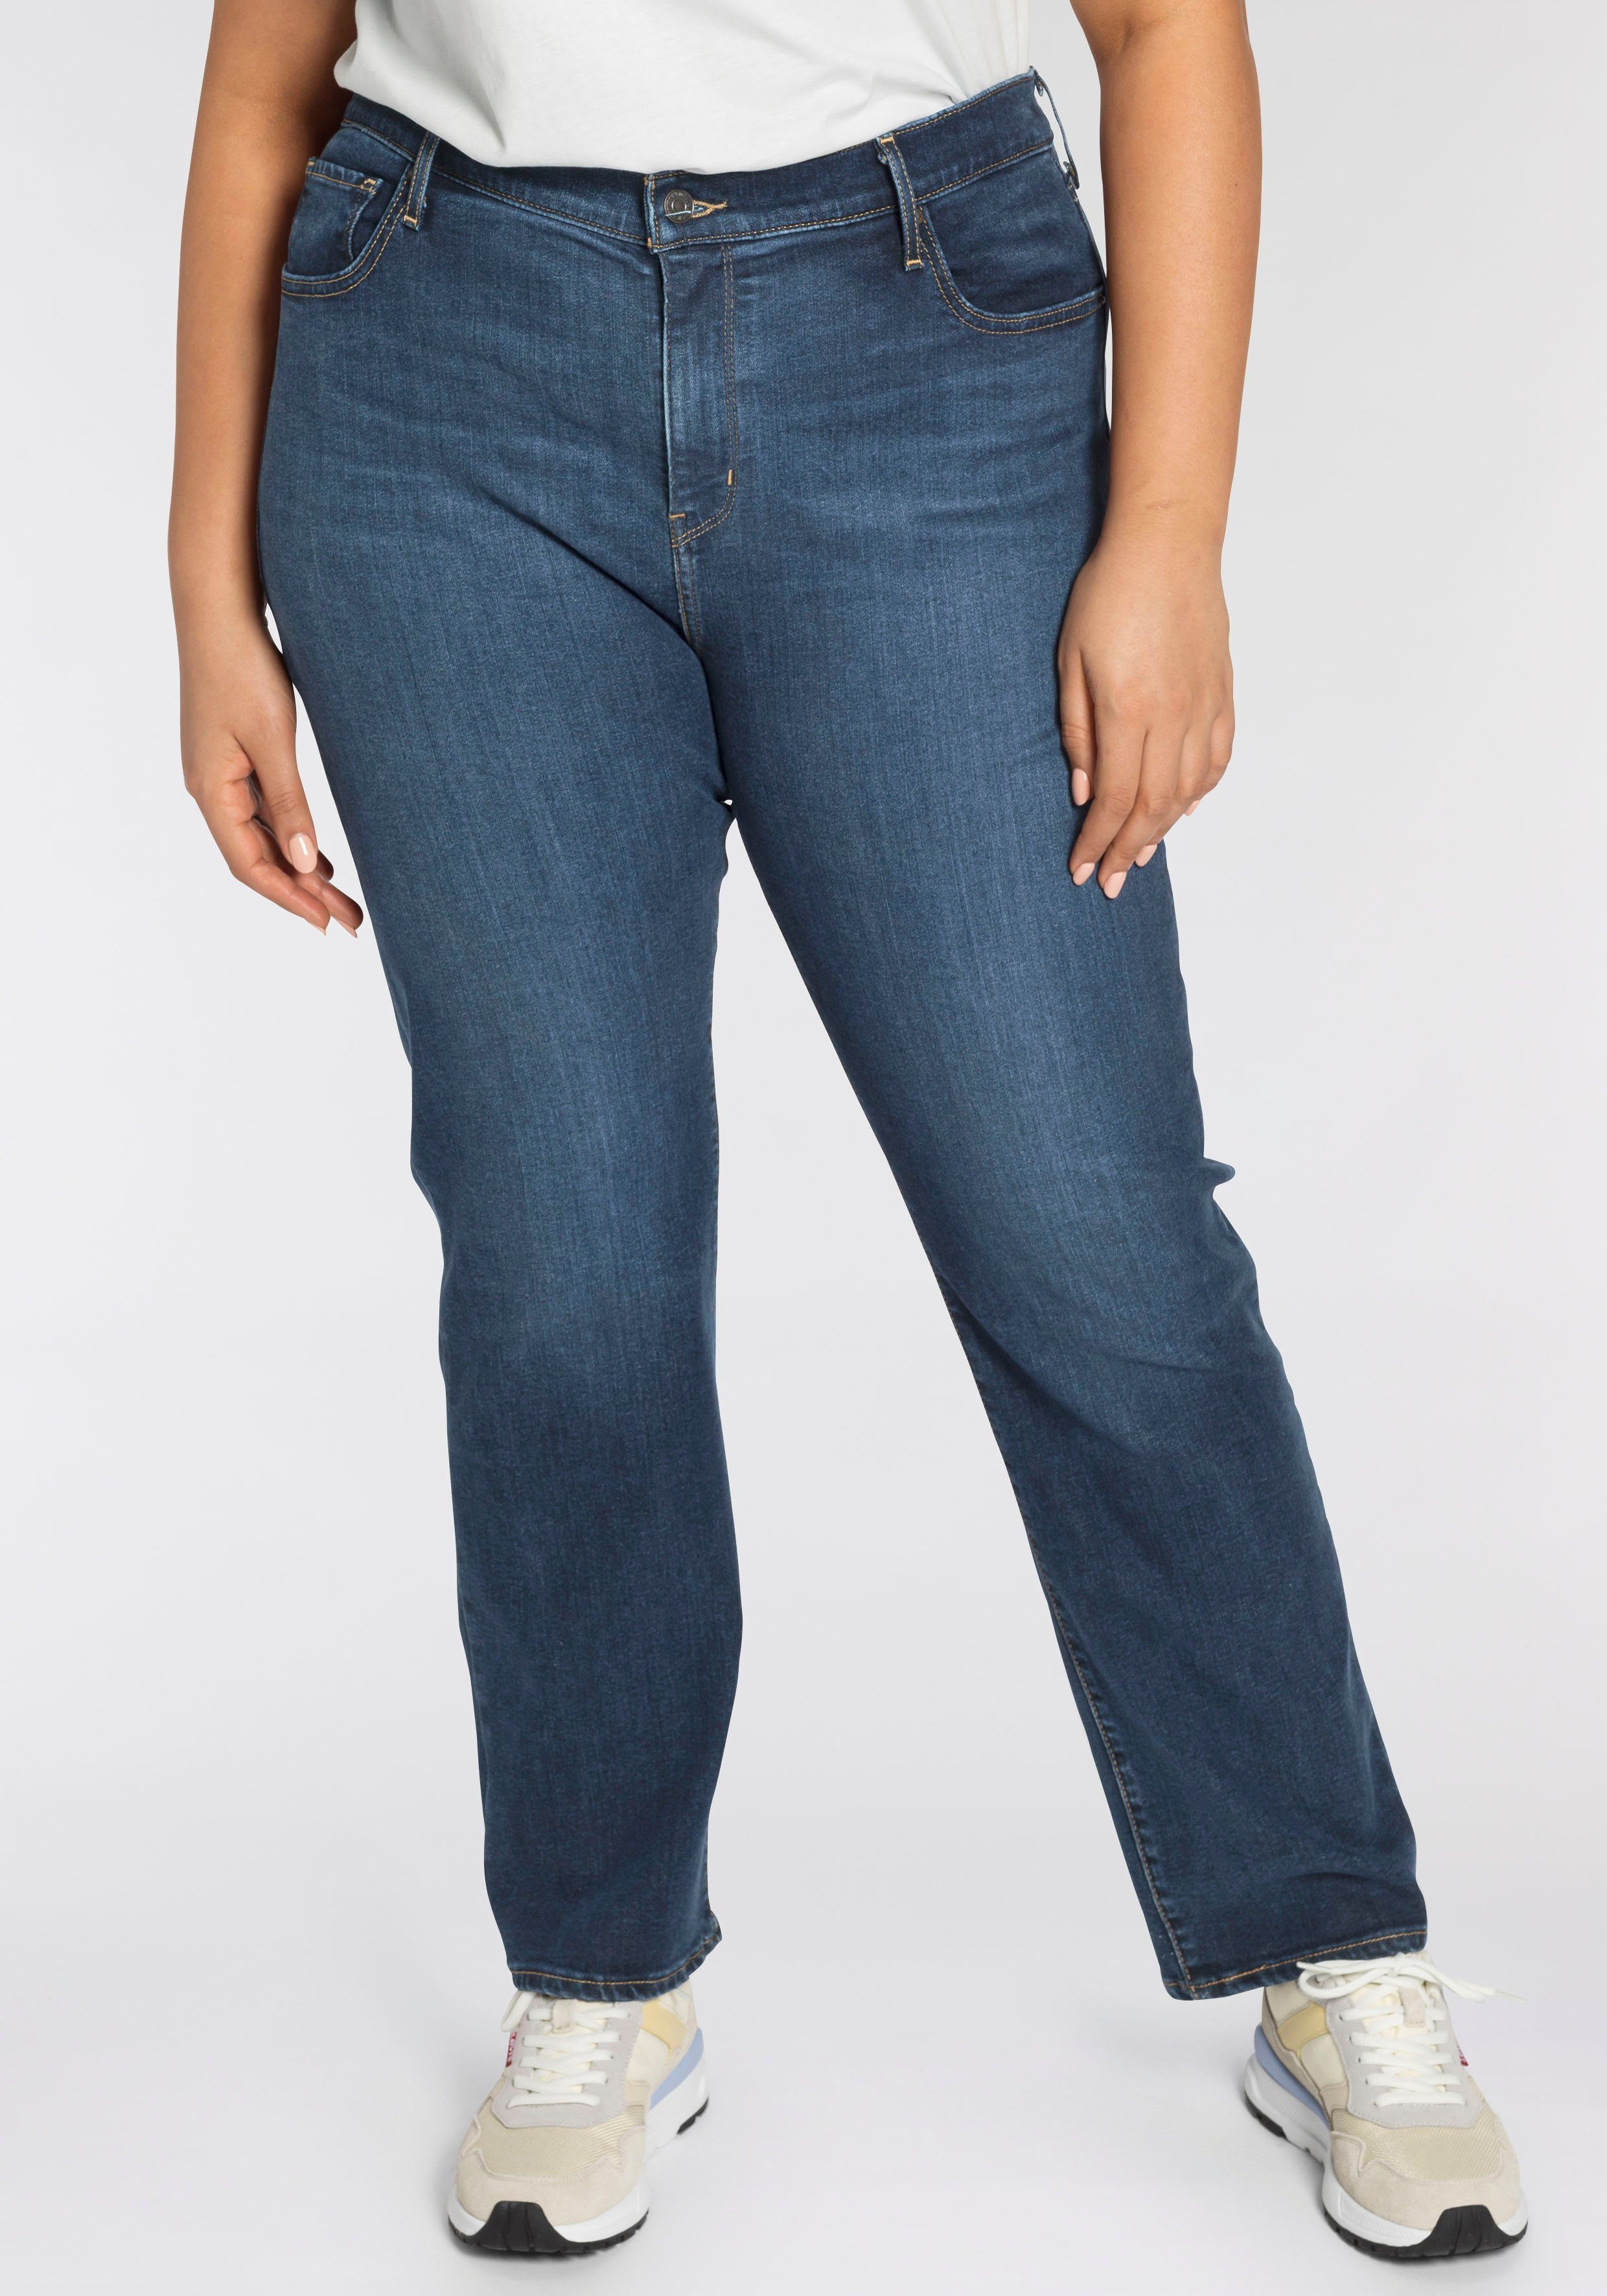 OTTO Damen Kleidung Hosen & Jeans Lange Hosen Stretchhosen Bügelfaltenhose »Knöchellange Hose in knitterarmer Stretch-Qualität« 